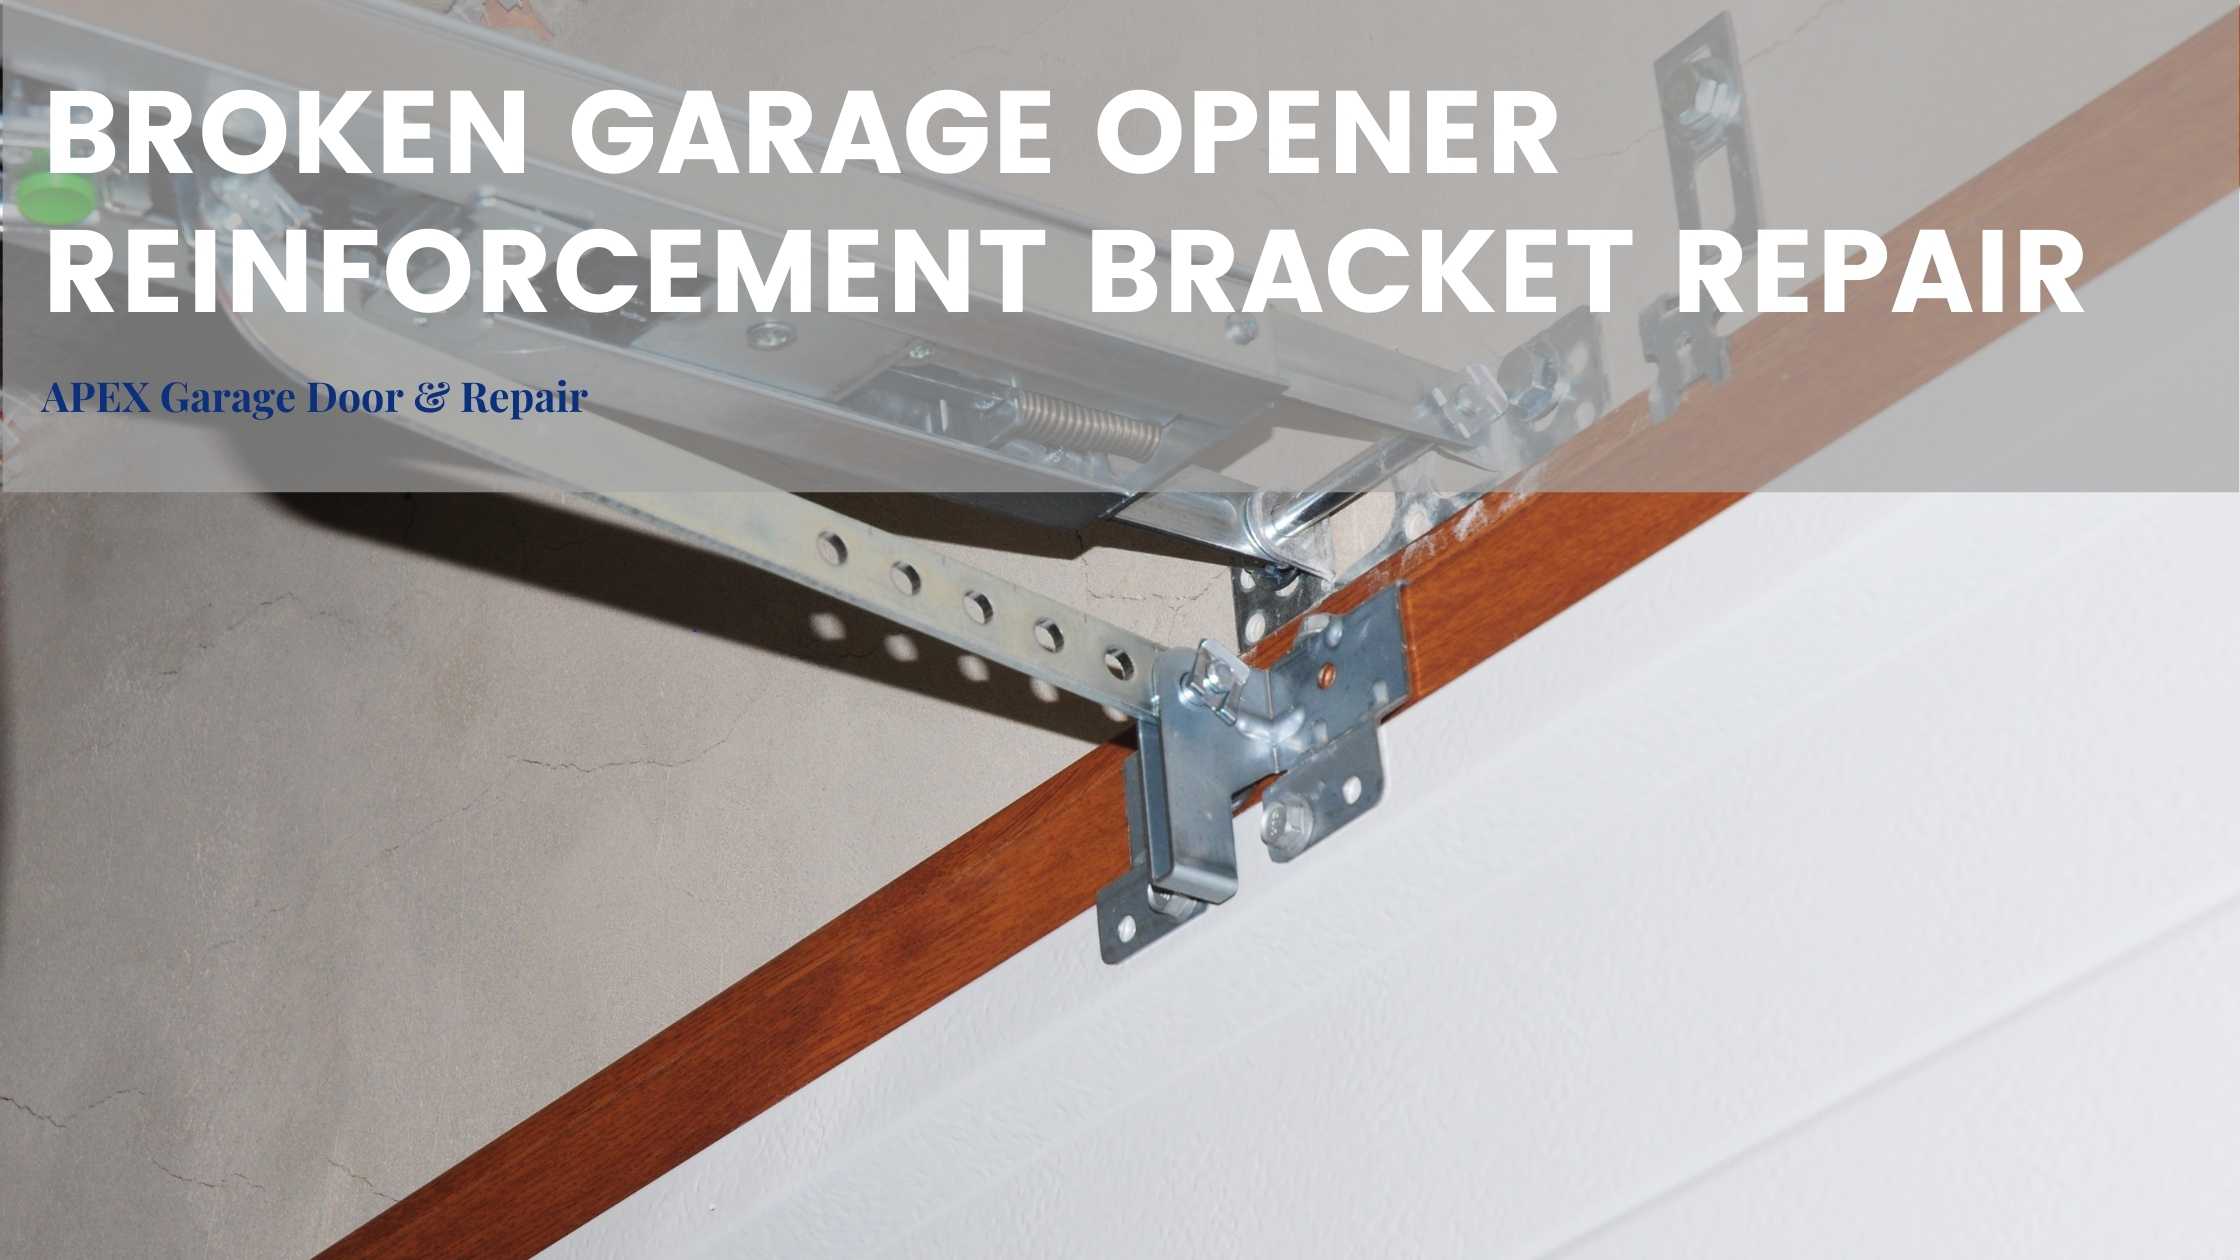 Broken Garage Opener Reinforcement Bracket Repair